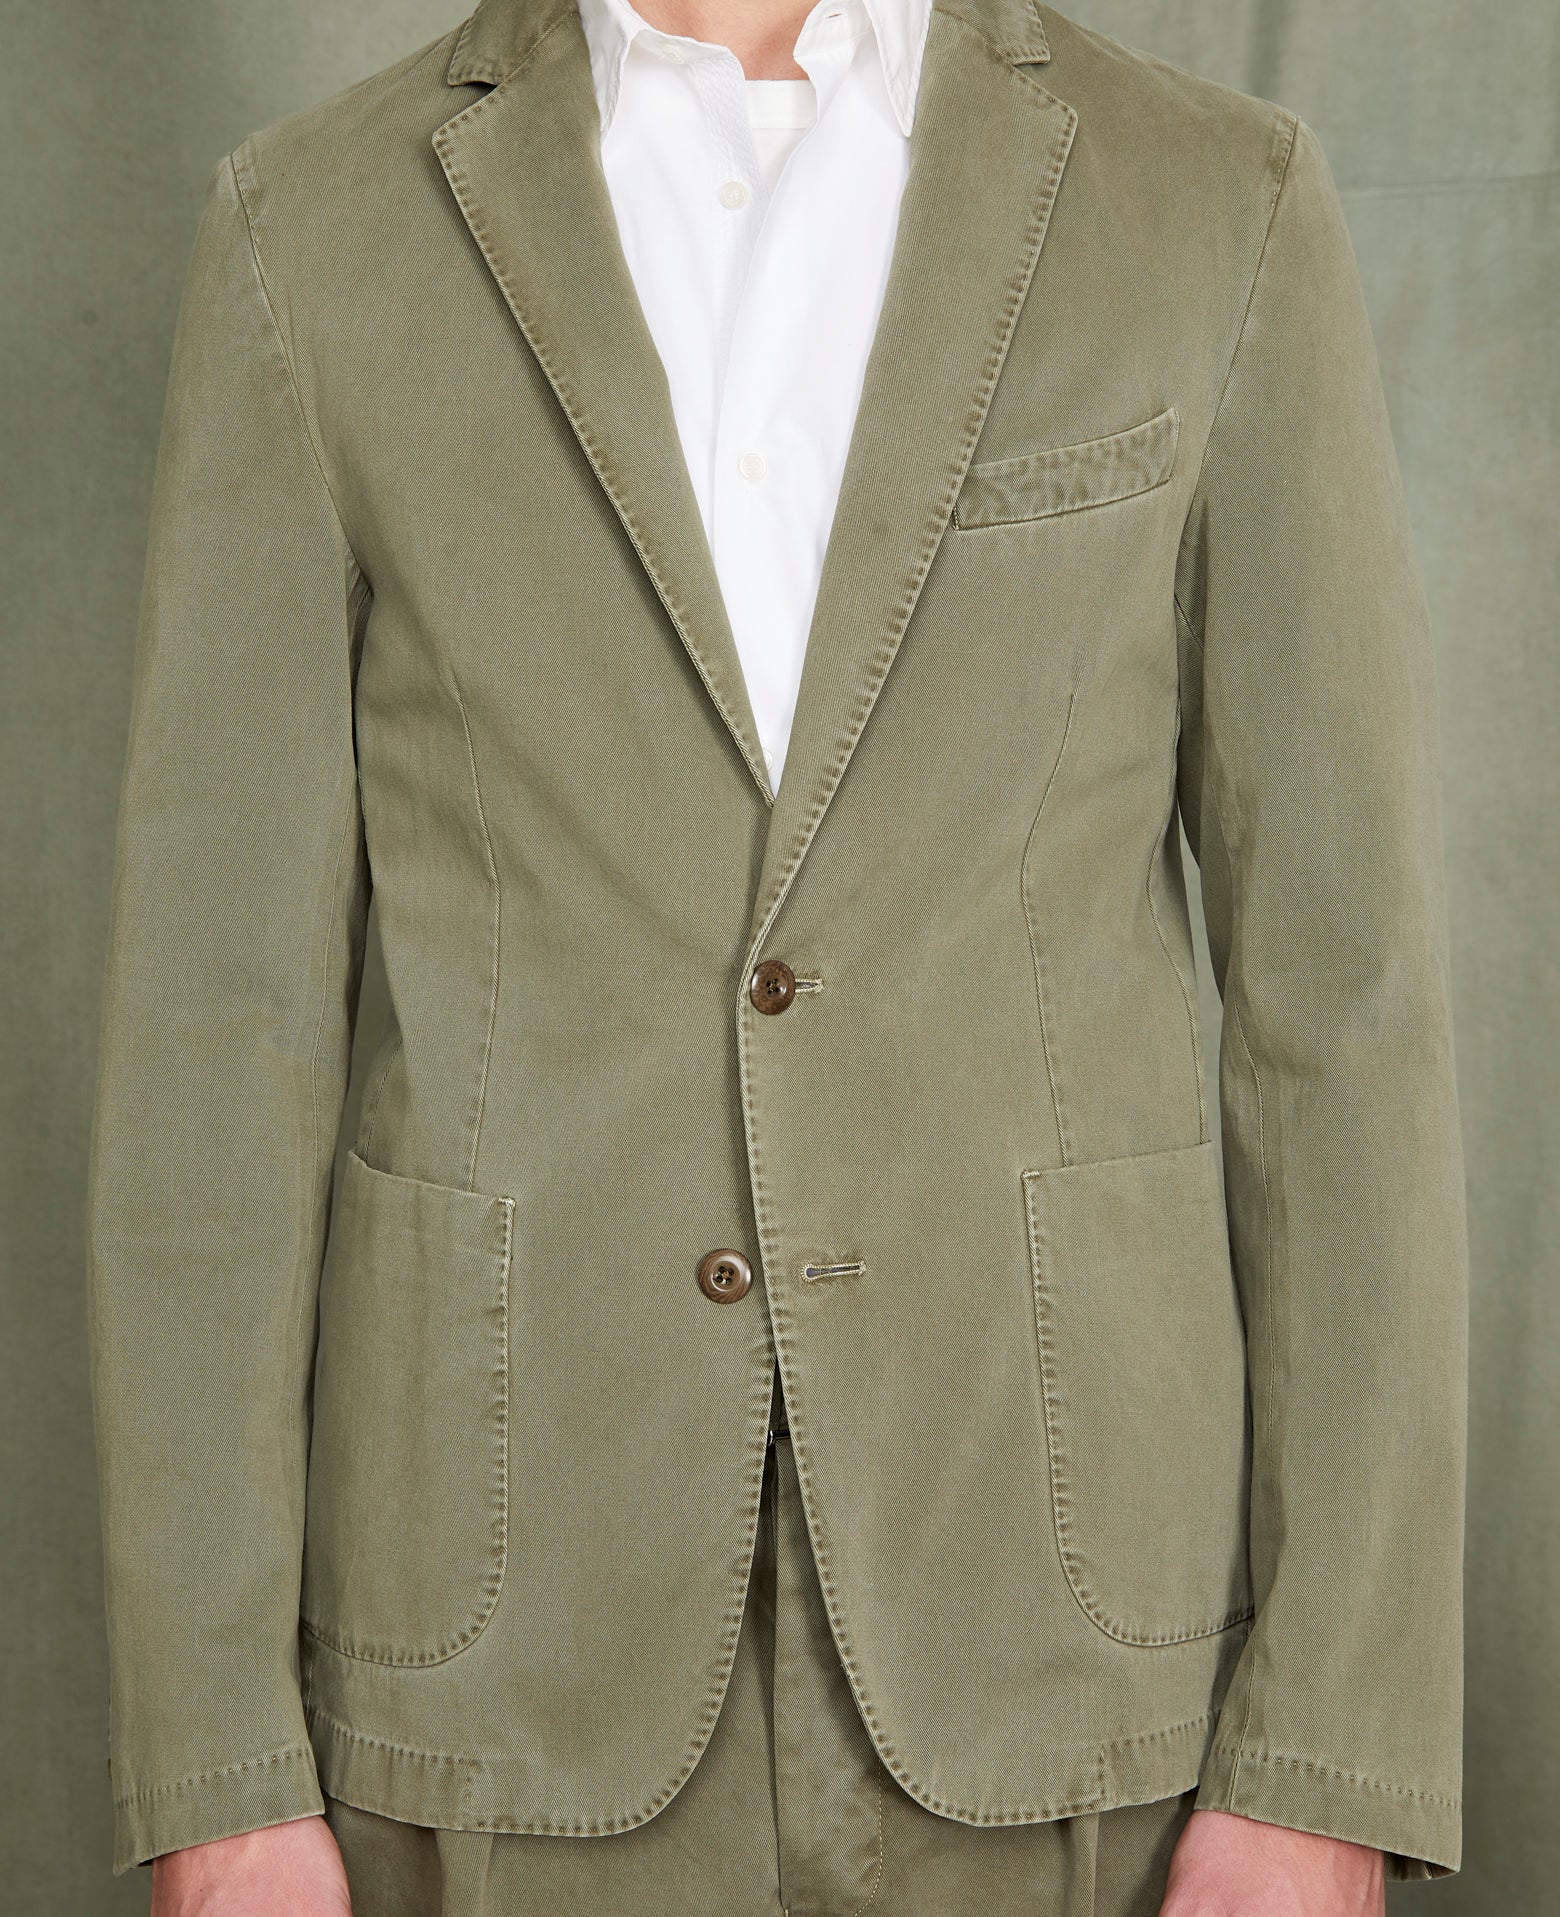 New lightest jacket OLIVE - Image 3